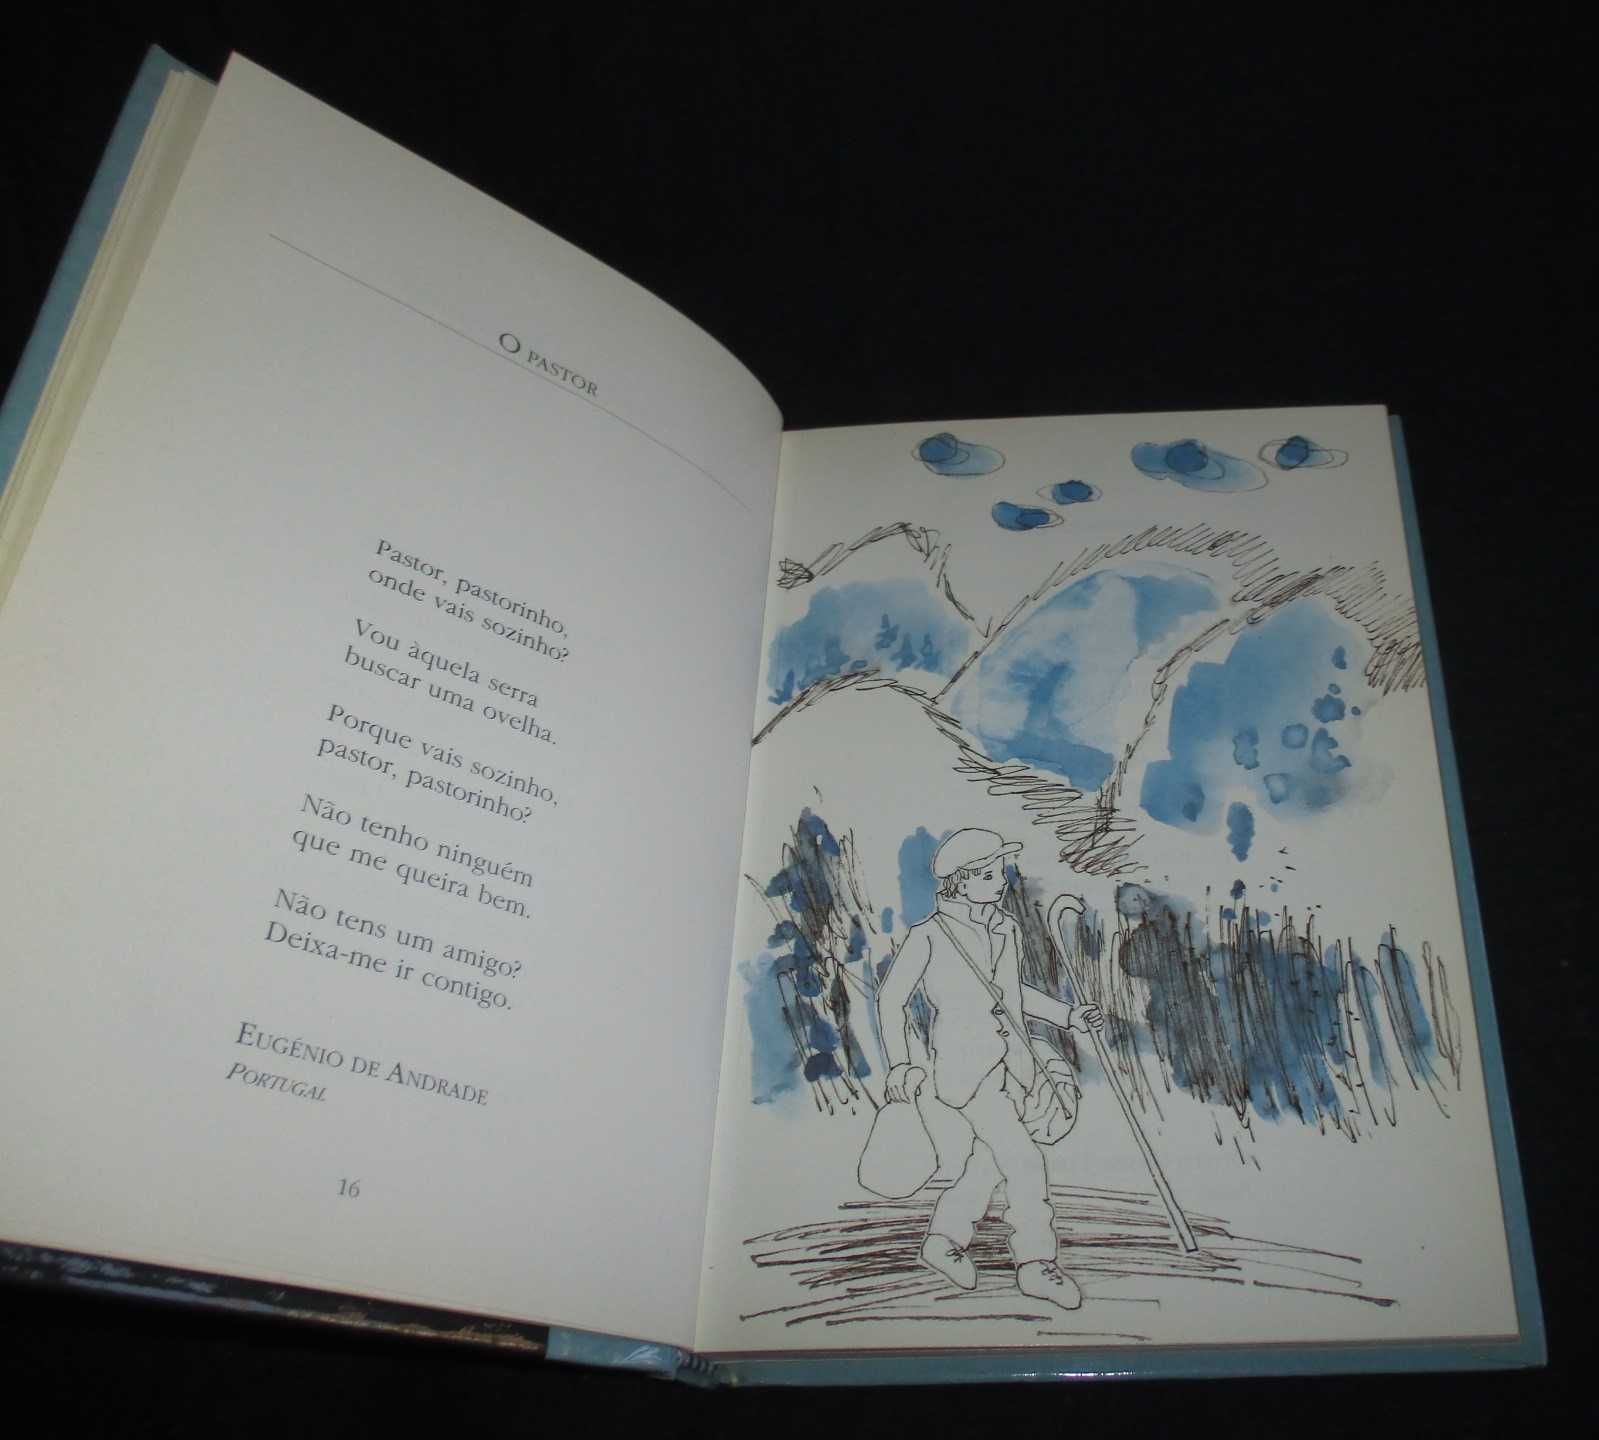 Livro Primeiro livro de Poesia Sophia de Mello Breyner Andresen